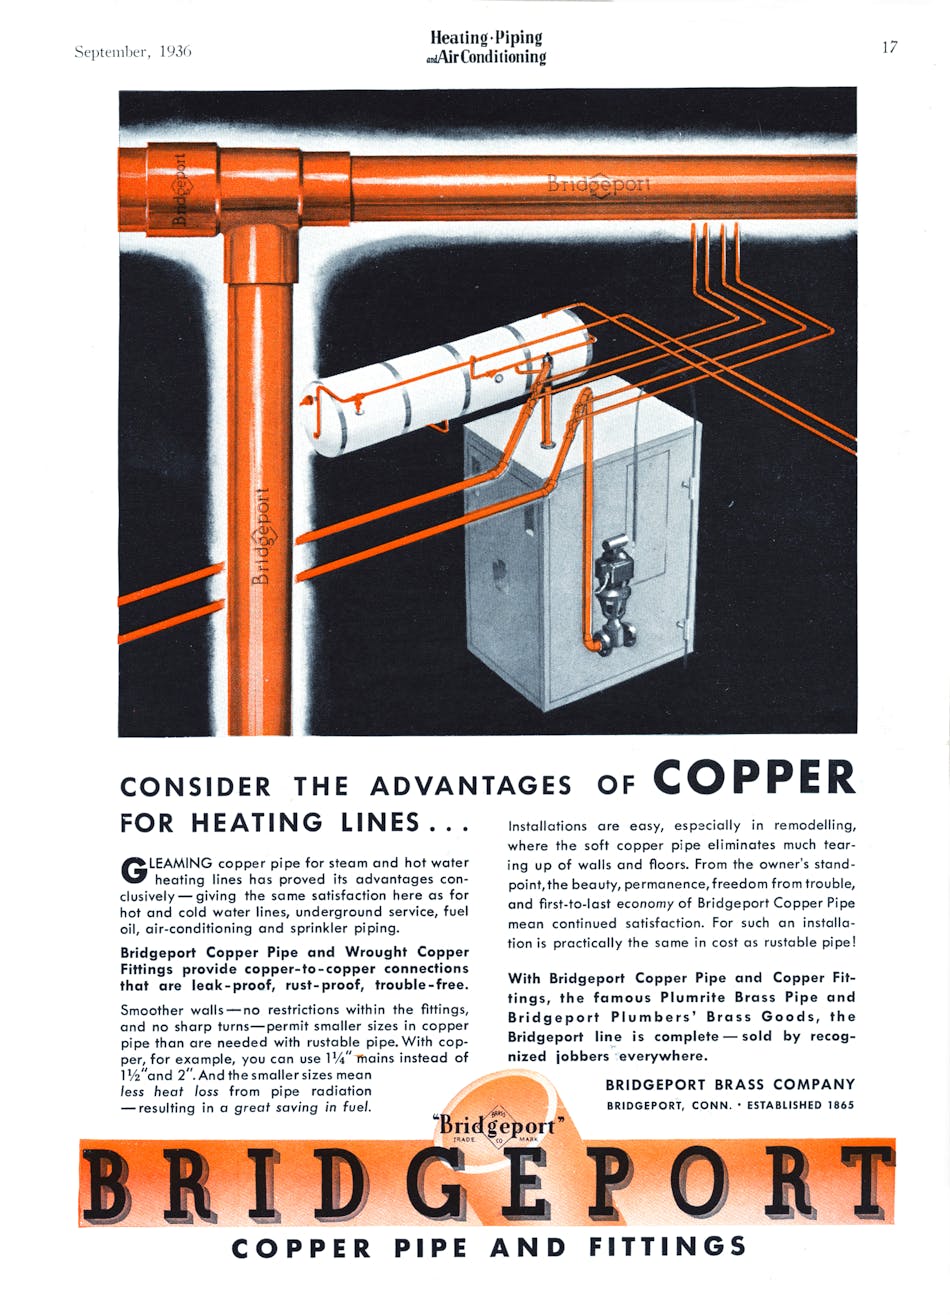 Hpac Com Sites Hpac com Files Uploads 2015 03 18 bridgeport Copper September 1936